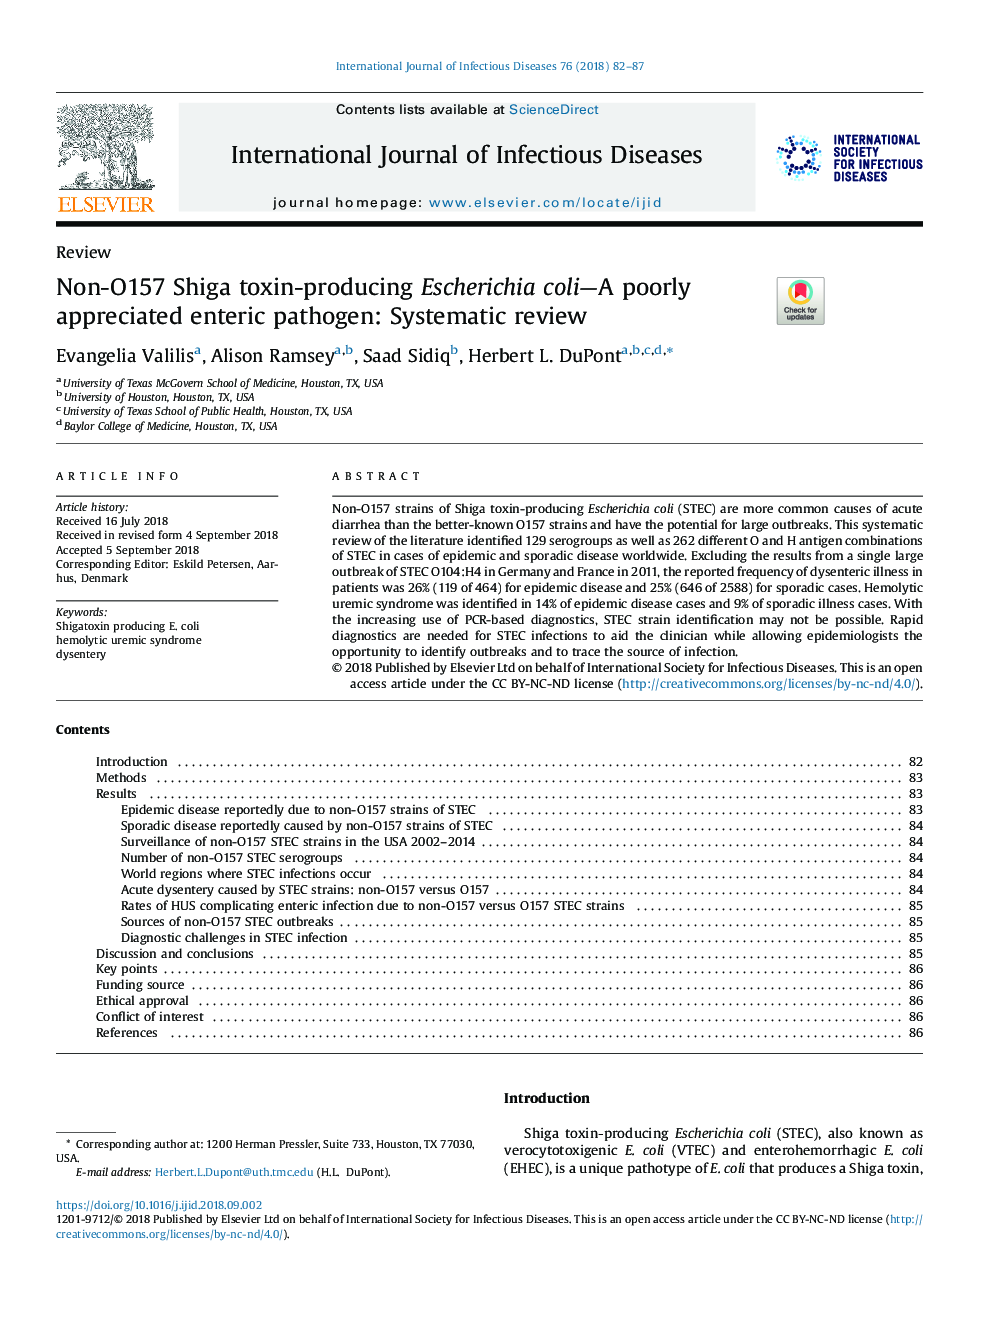 Non-O157 Shiga toxin-producing Escherichia coli-A poorly appreciated enteric pathogen: Systematic review